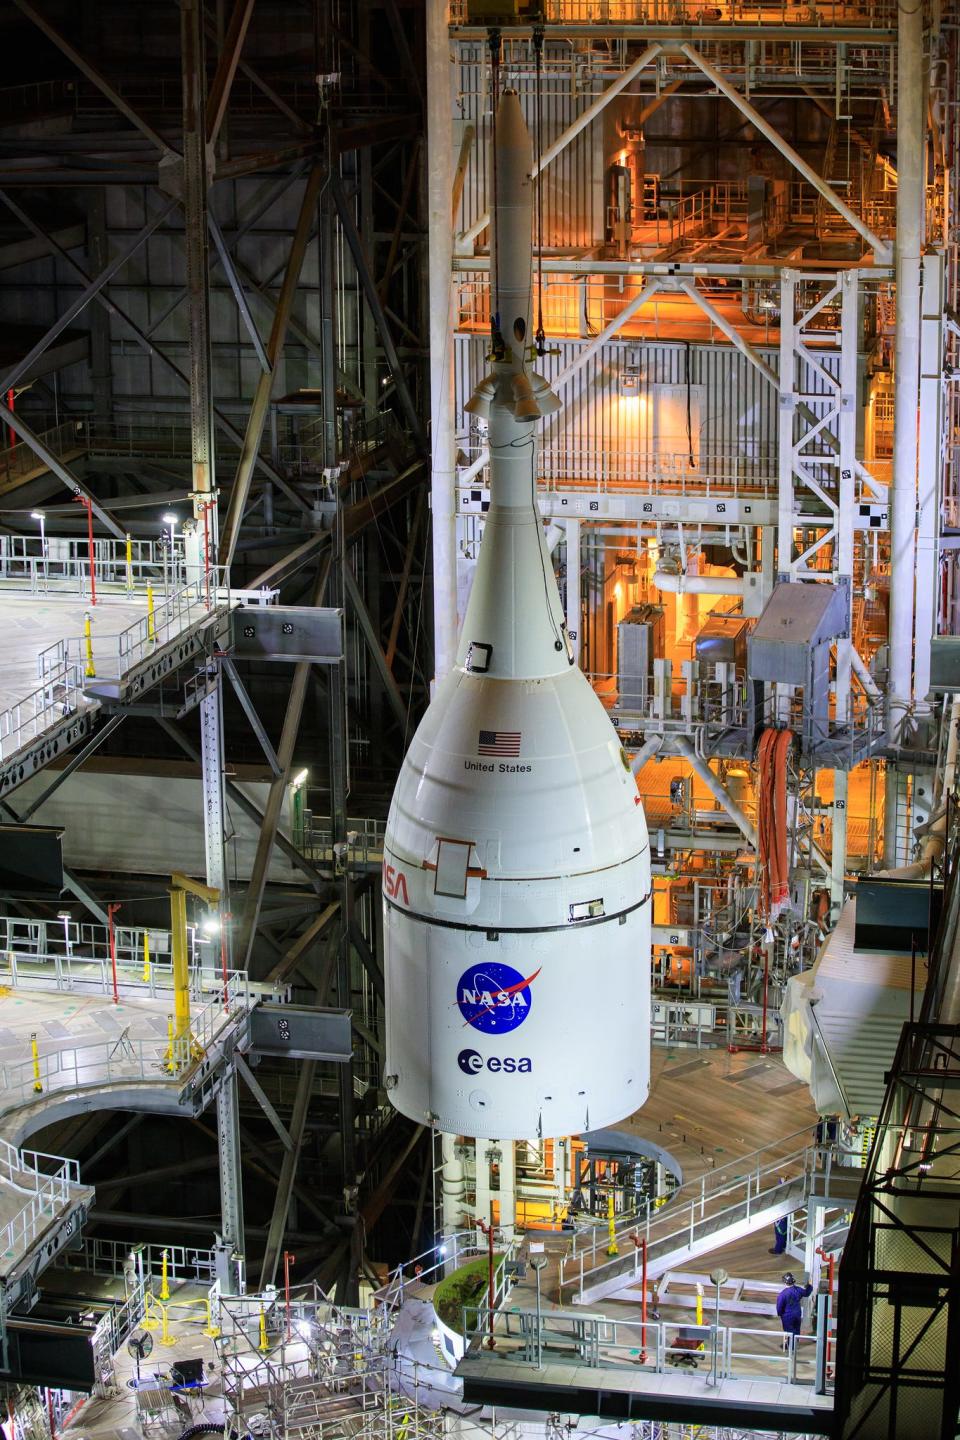 Orion is een ruimteschip met een spitse top opgehangen in een hoog industrieel gebouw